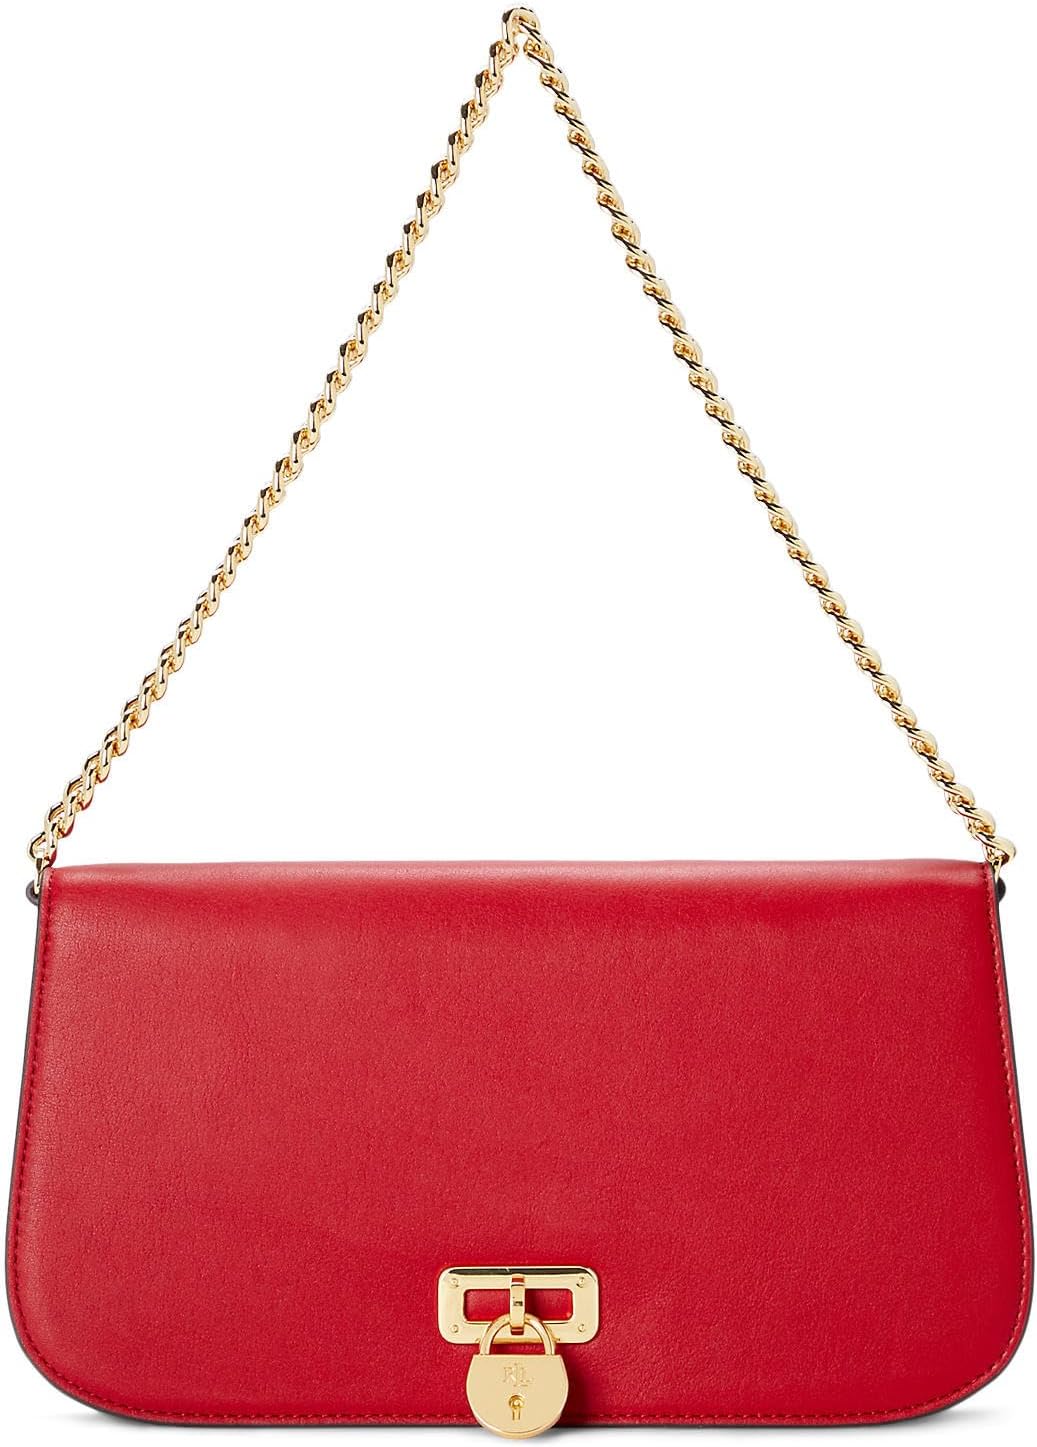 Кожаная сумка через плечо среднего размера Tanner LAUREN Ralph Lauren, цвет Martin Red